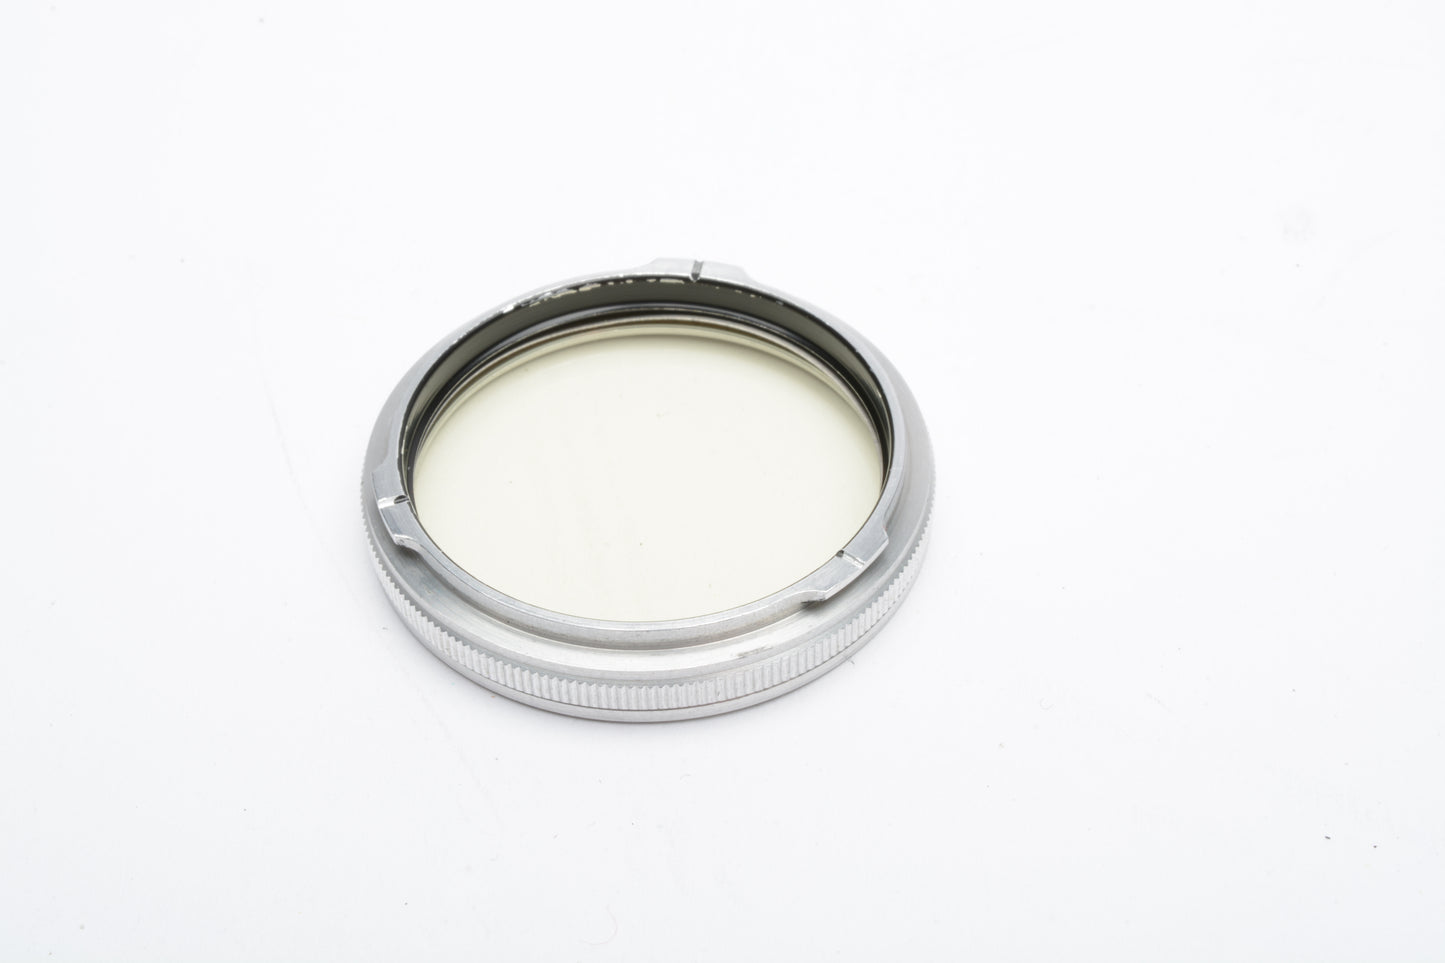 Rollei Franke & Heidecke 28.5mm UV filter in jewel case